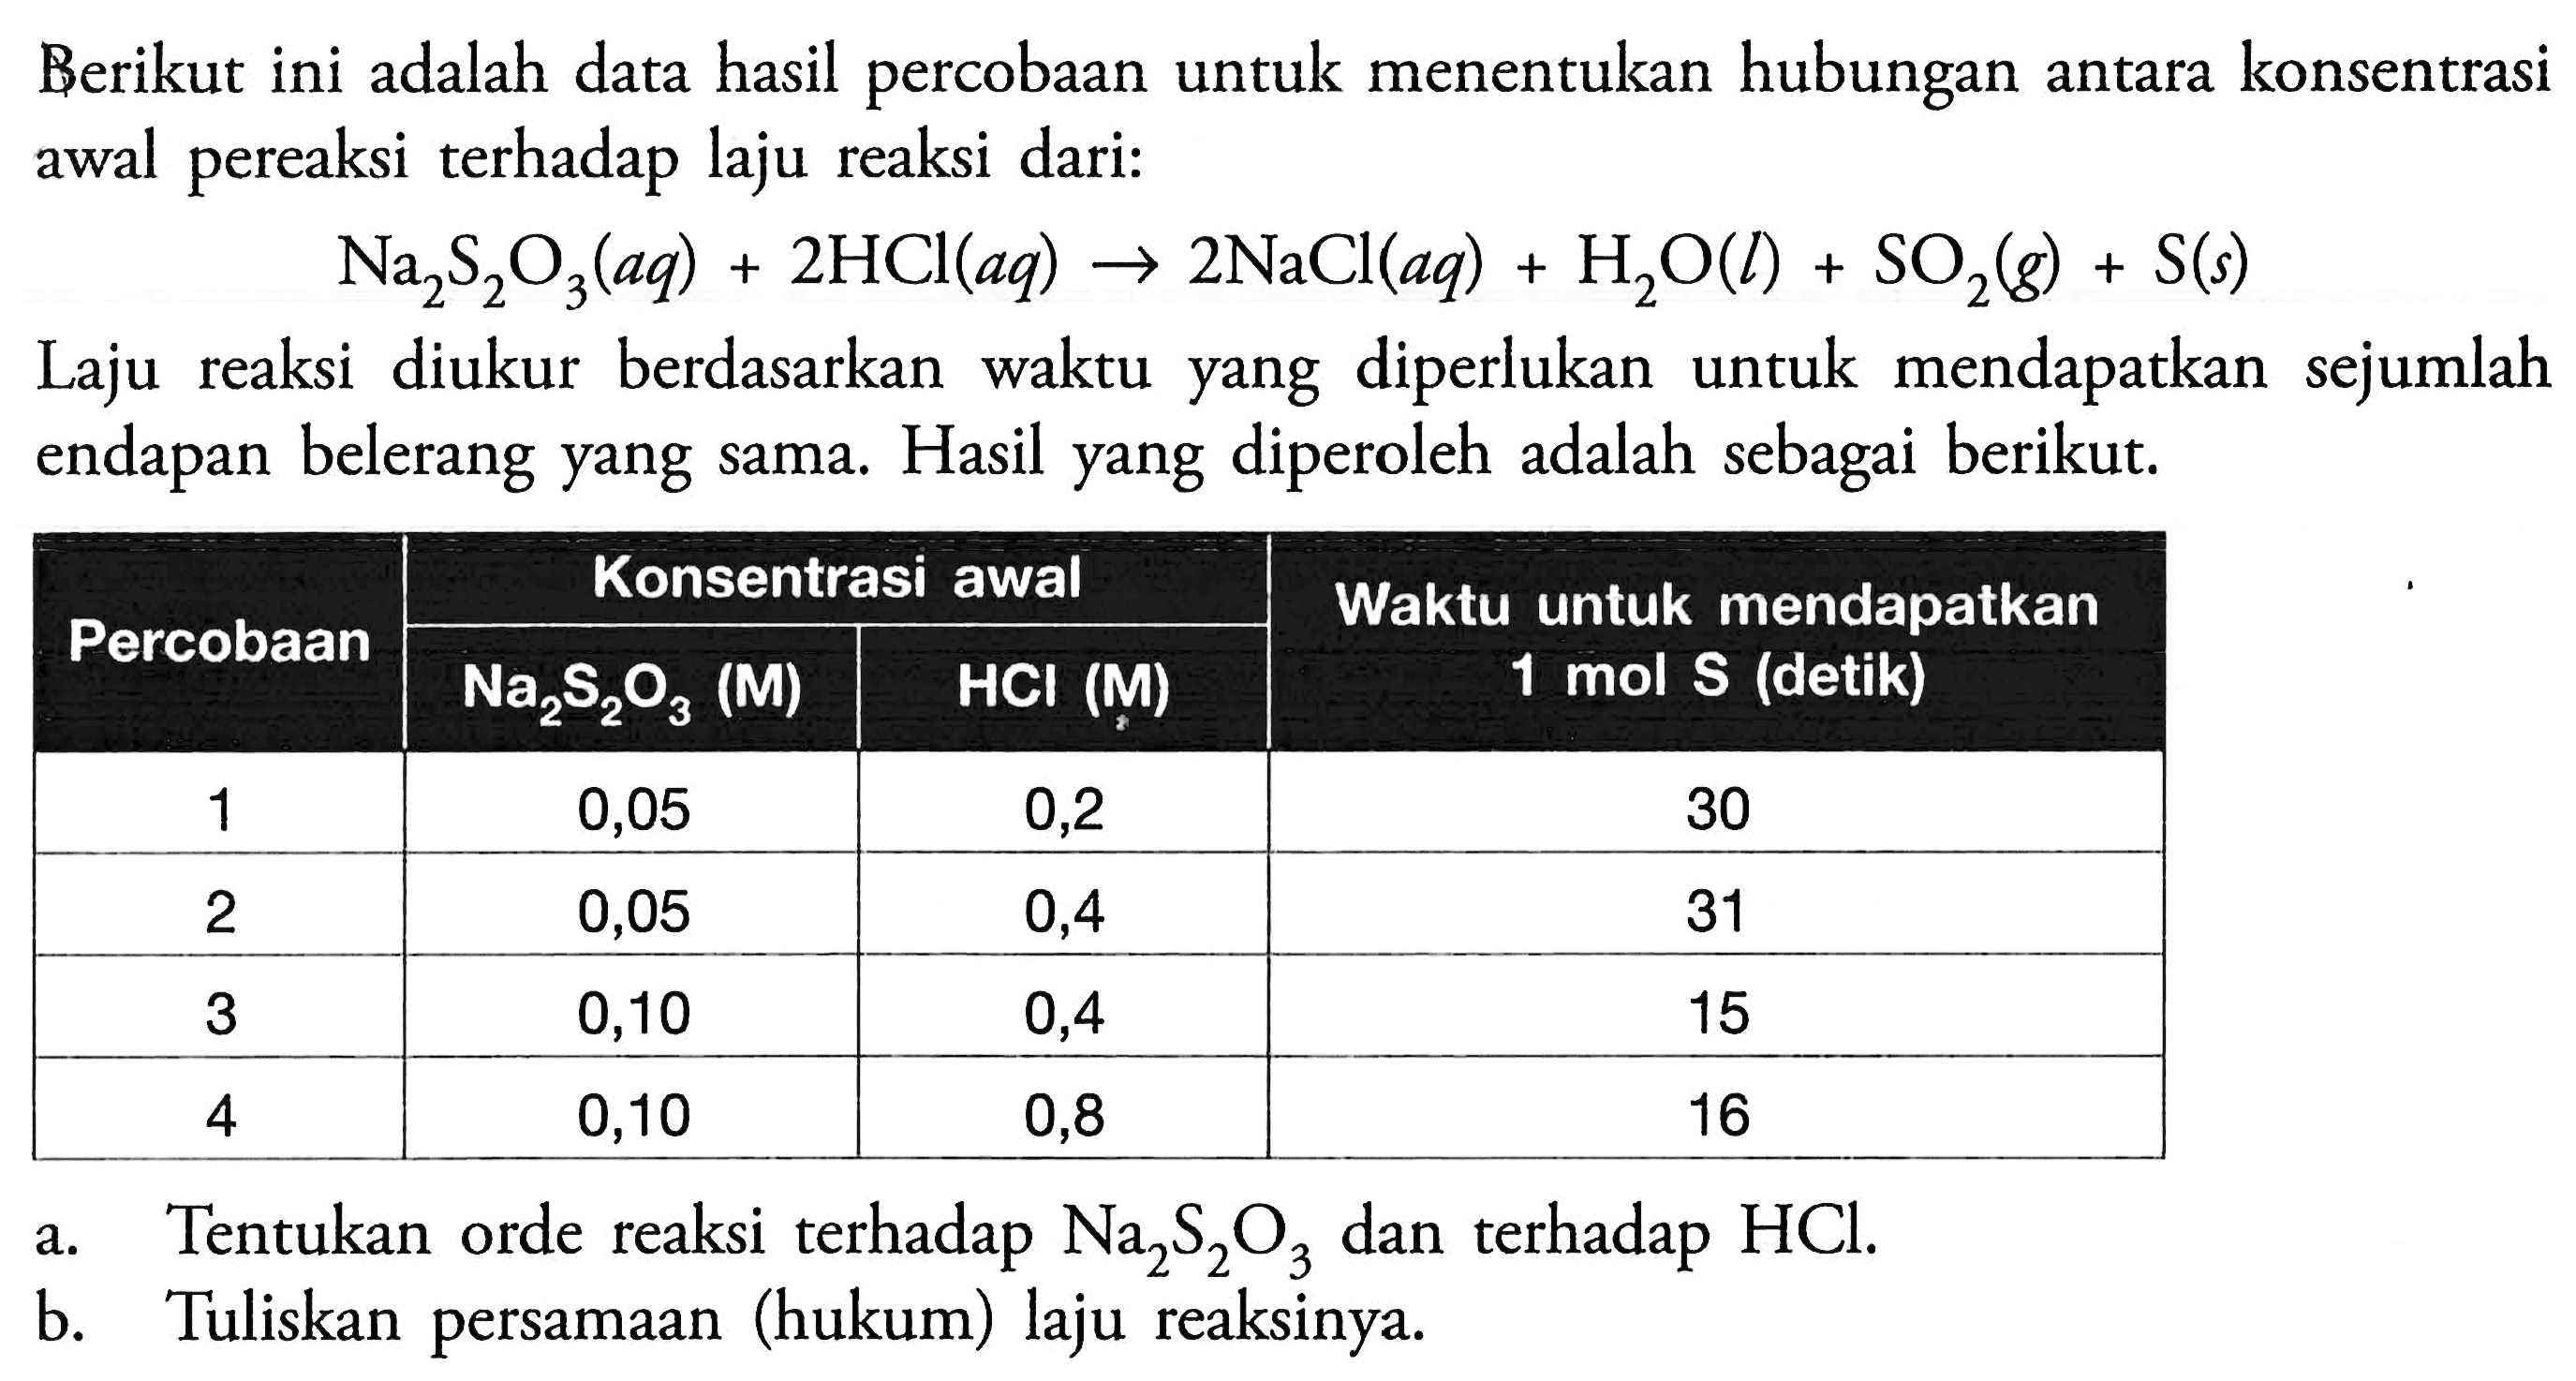 Berikut ini adalah data hasil percobaan untuk menentukan hubungan antara konsentrasi awal pereaksi terhadap laju reaksi dari:Na2S2O3(aq)+2HCl(aq) -> 2NaCl(aq)+H2O(l)+SO2(g)+S(s)Laju reaksi diukur berdasarkan waktu yang diperlukan untuk mendapatkan sejumlah endapan belerang yang sama. Hasil yang diperoleh adalah sebagai berikut.  Percobaan    Konsentrasi awal    Waktu untuk mendapatkan  Na2S2O3  (M)   HCl(M)   1 mol  S  (detik)  1  0,05  0,2  30  2  0,05  0,4  31  3  0,10  0,4  15  4  0,10  0,8  16 a. Tentukan orde reaksi terhadap  Na2S2O3  dan terhadap  HCl .b. Tuliskan persamaan (hukum) laju reaksinya.